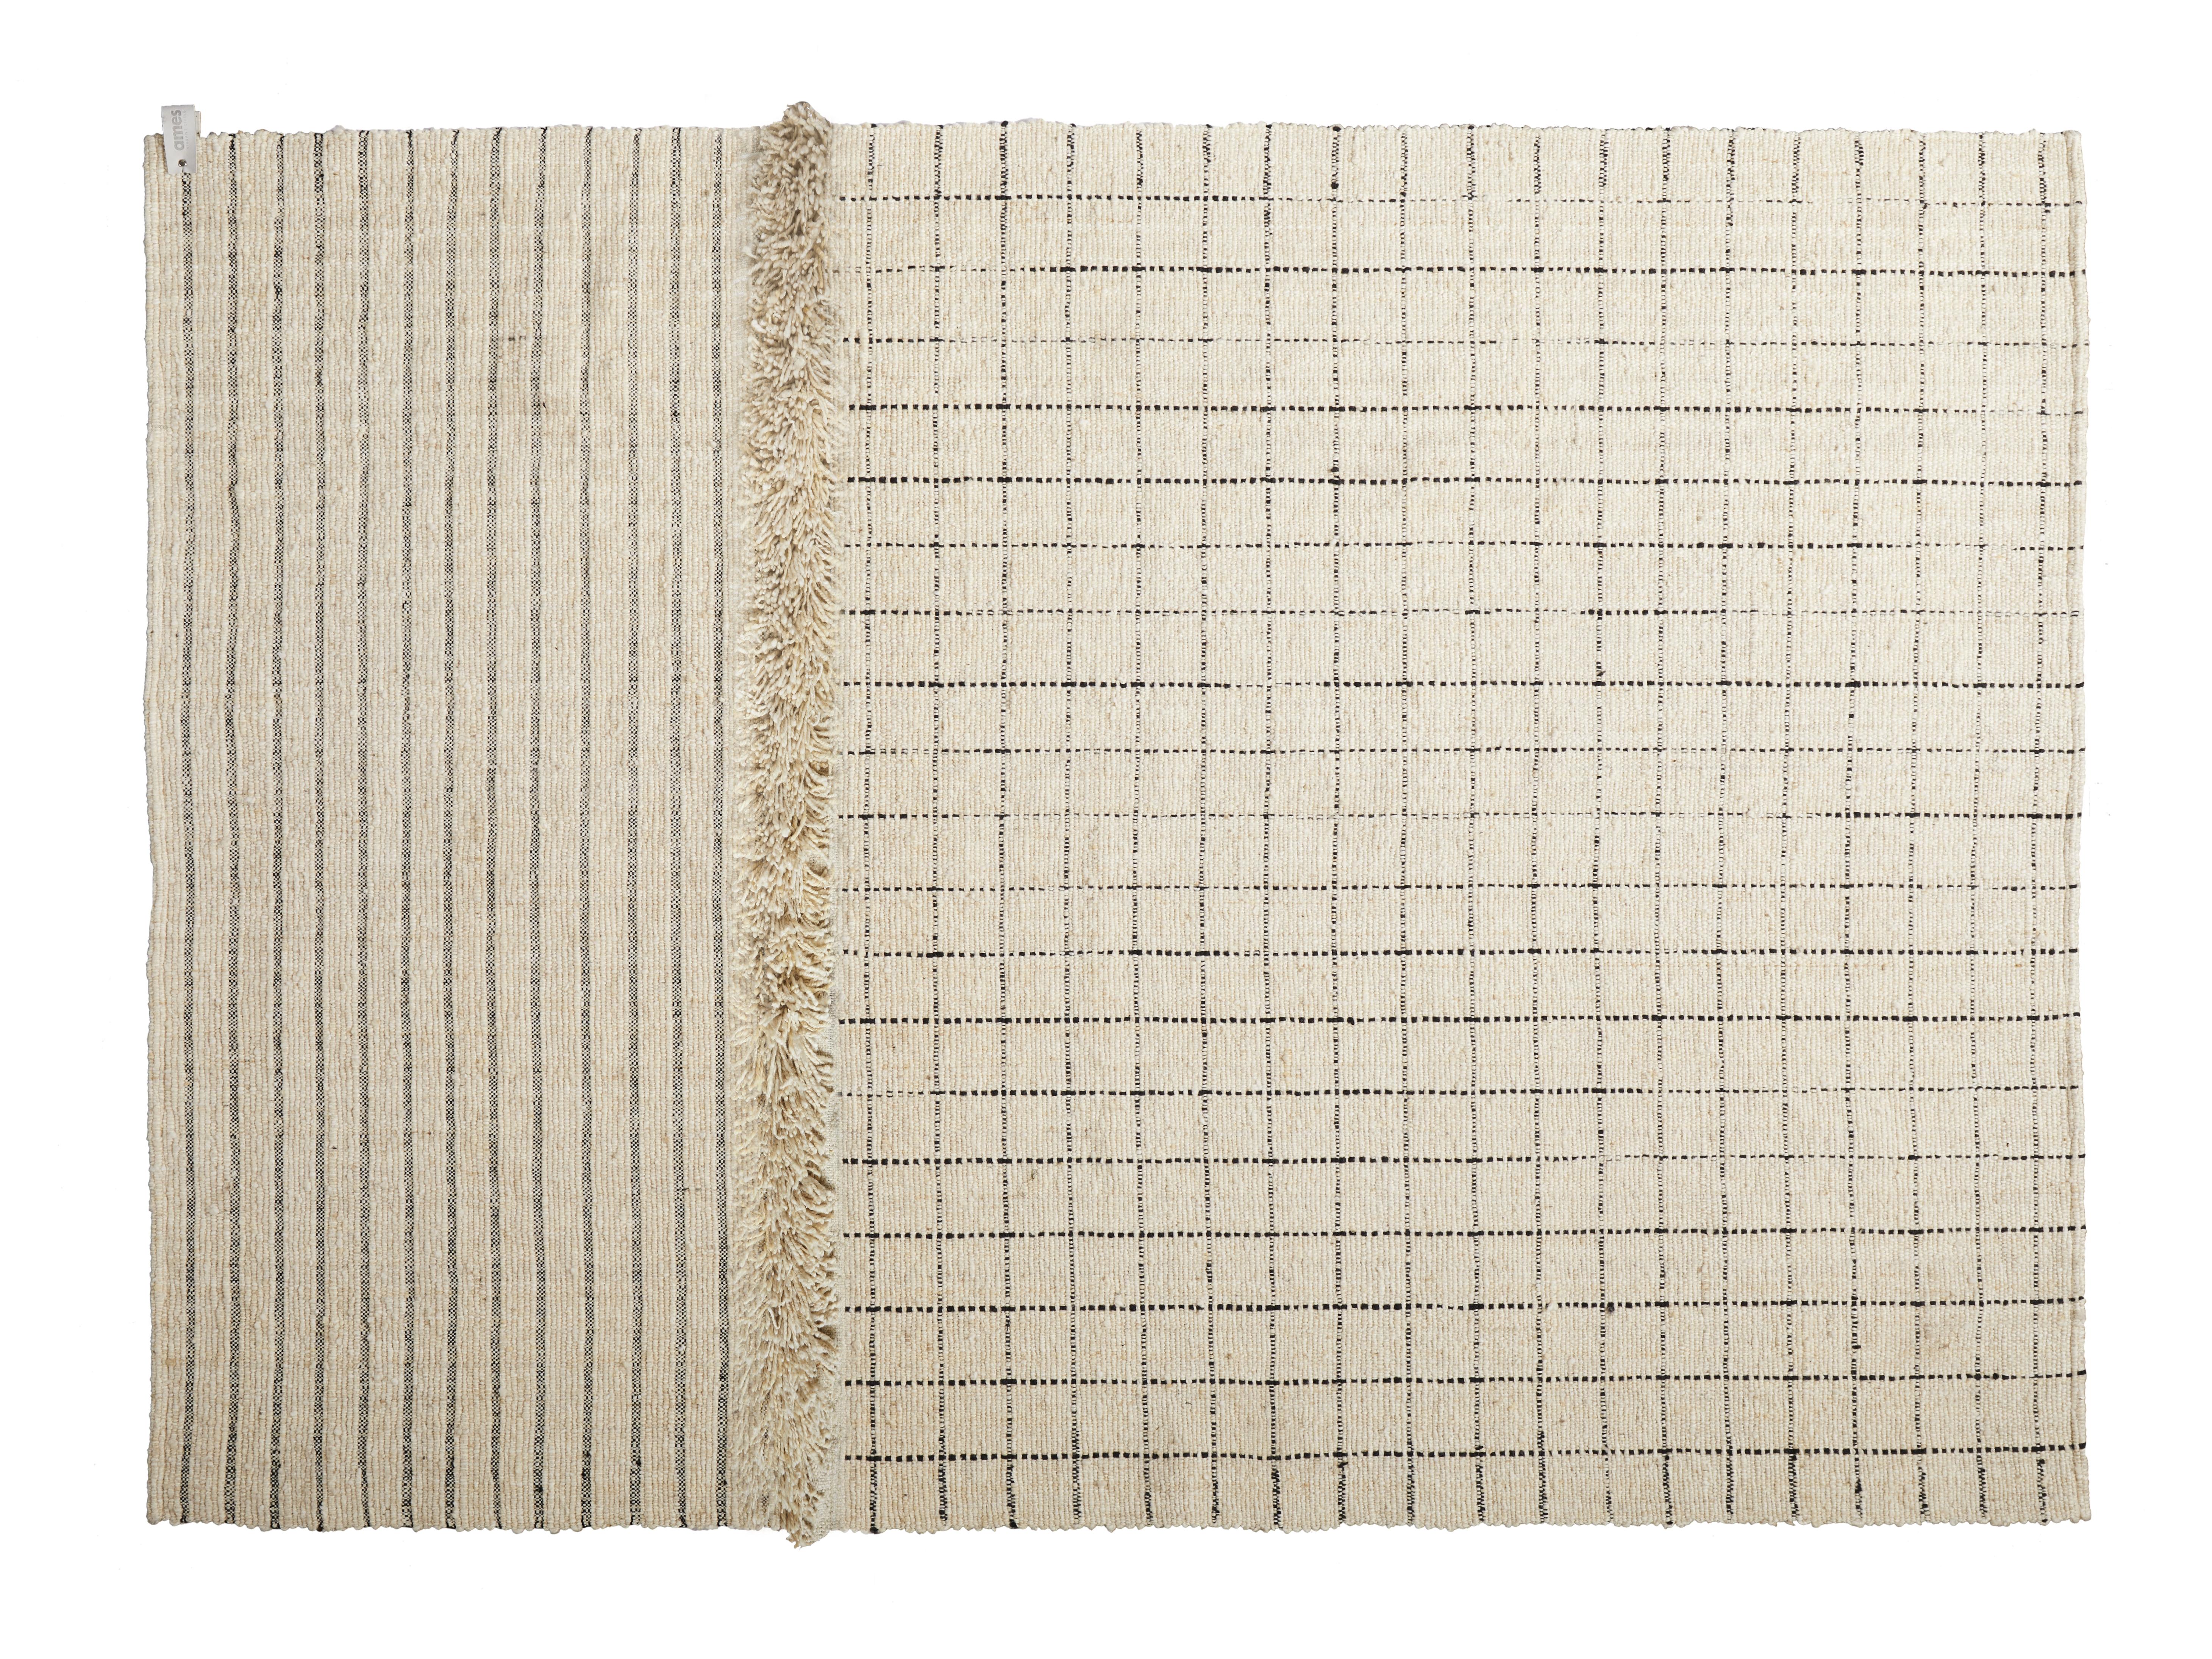 Karo kleiner subas teppich von Sebastian Herkner
MATERIALIEN: 100% natürliche Schurwolle. 
Technik: Natürlich gefärbte Fasern. Handgewebt in Kolumbien.
Abmessungen: B 160 x L 220 cm 
Erhältlich in den Farben: karo, linea 1, linea 2, moton,